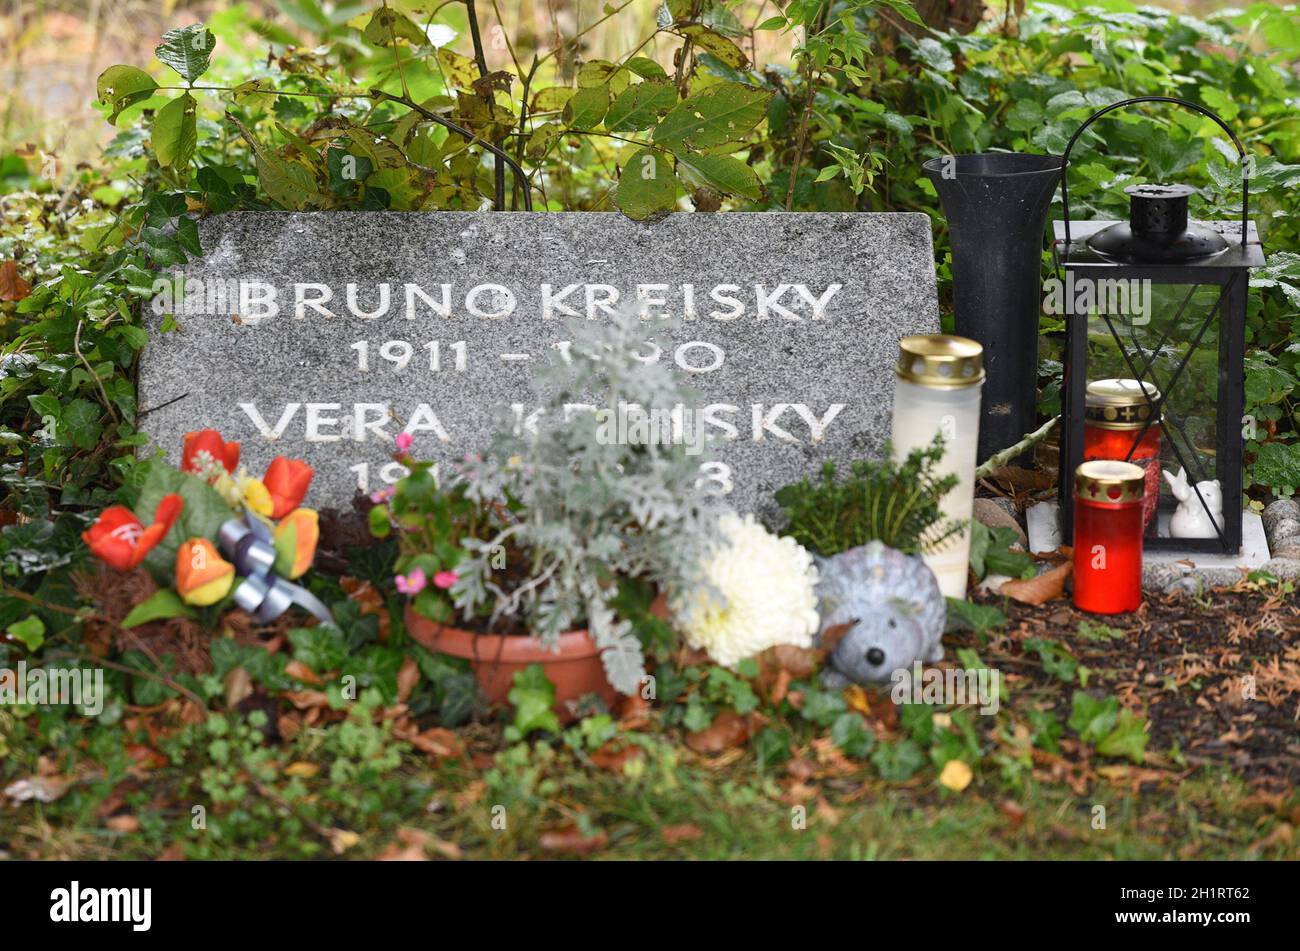 Das Ehrengrab des ehemaligen österreichischen Bundeskanzlers Bruno Kreisky auf dem Zentralfriedhof in Wien - The grave of honor of the former Austrian Stock Photo